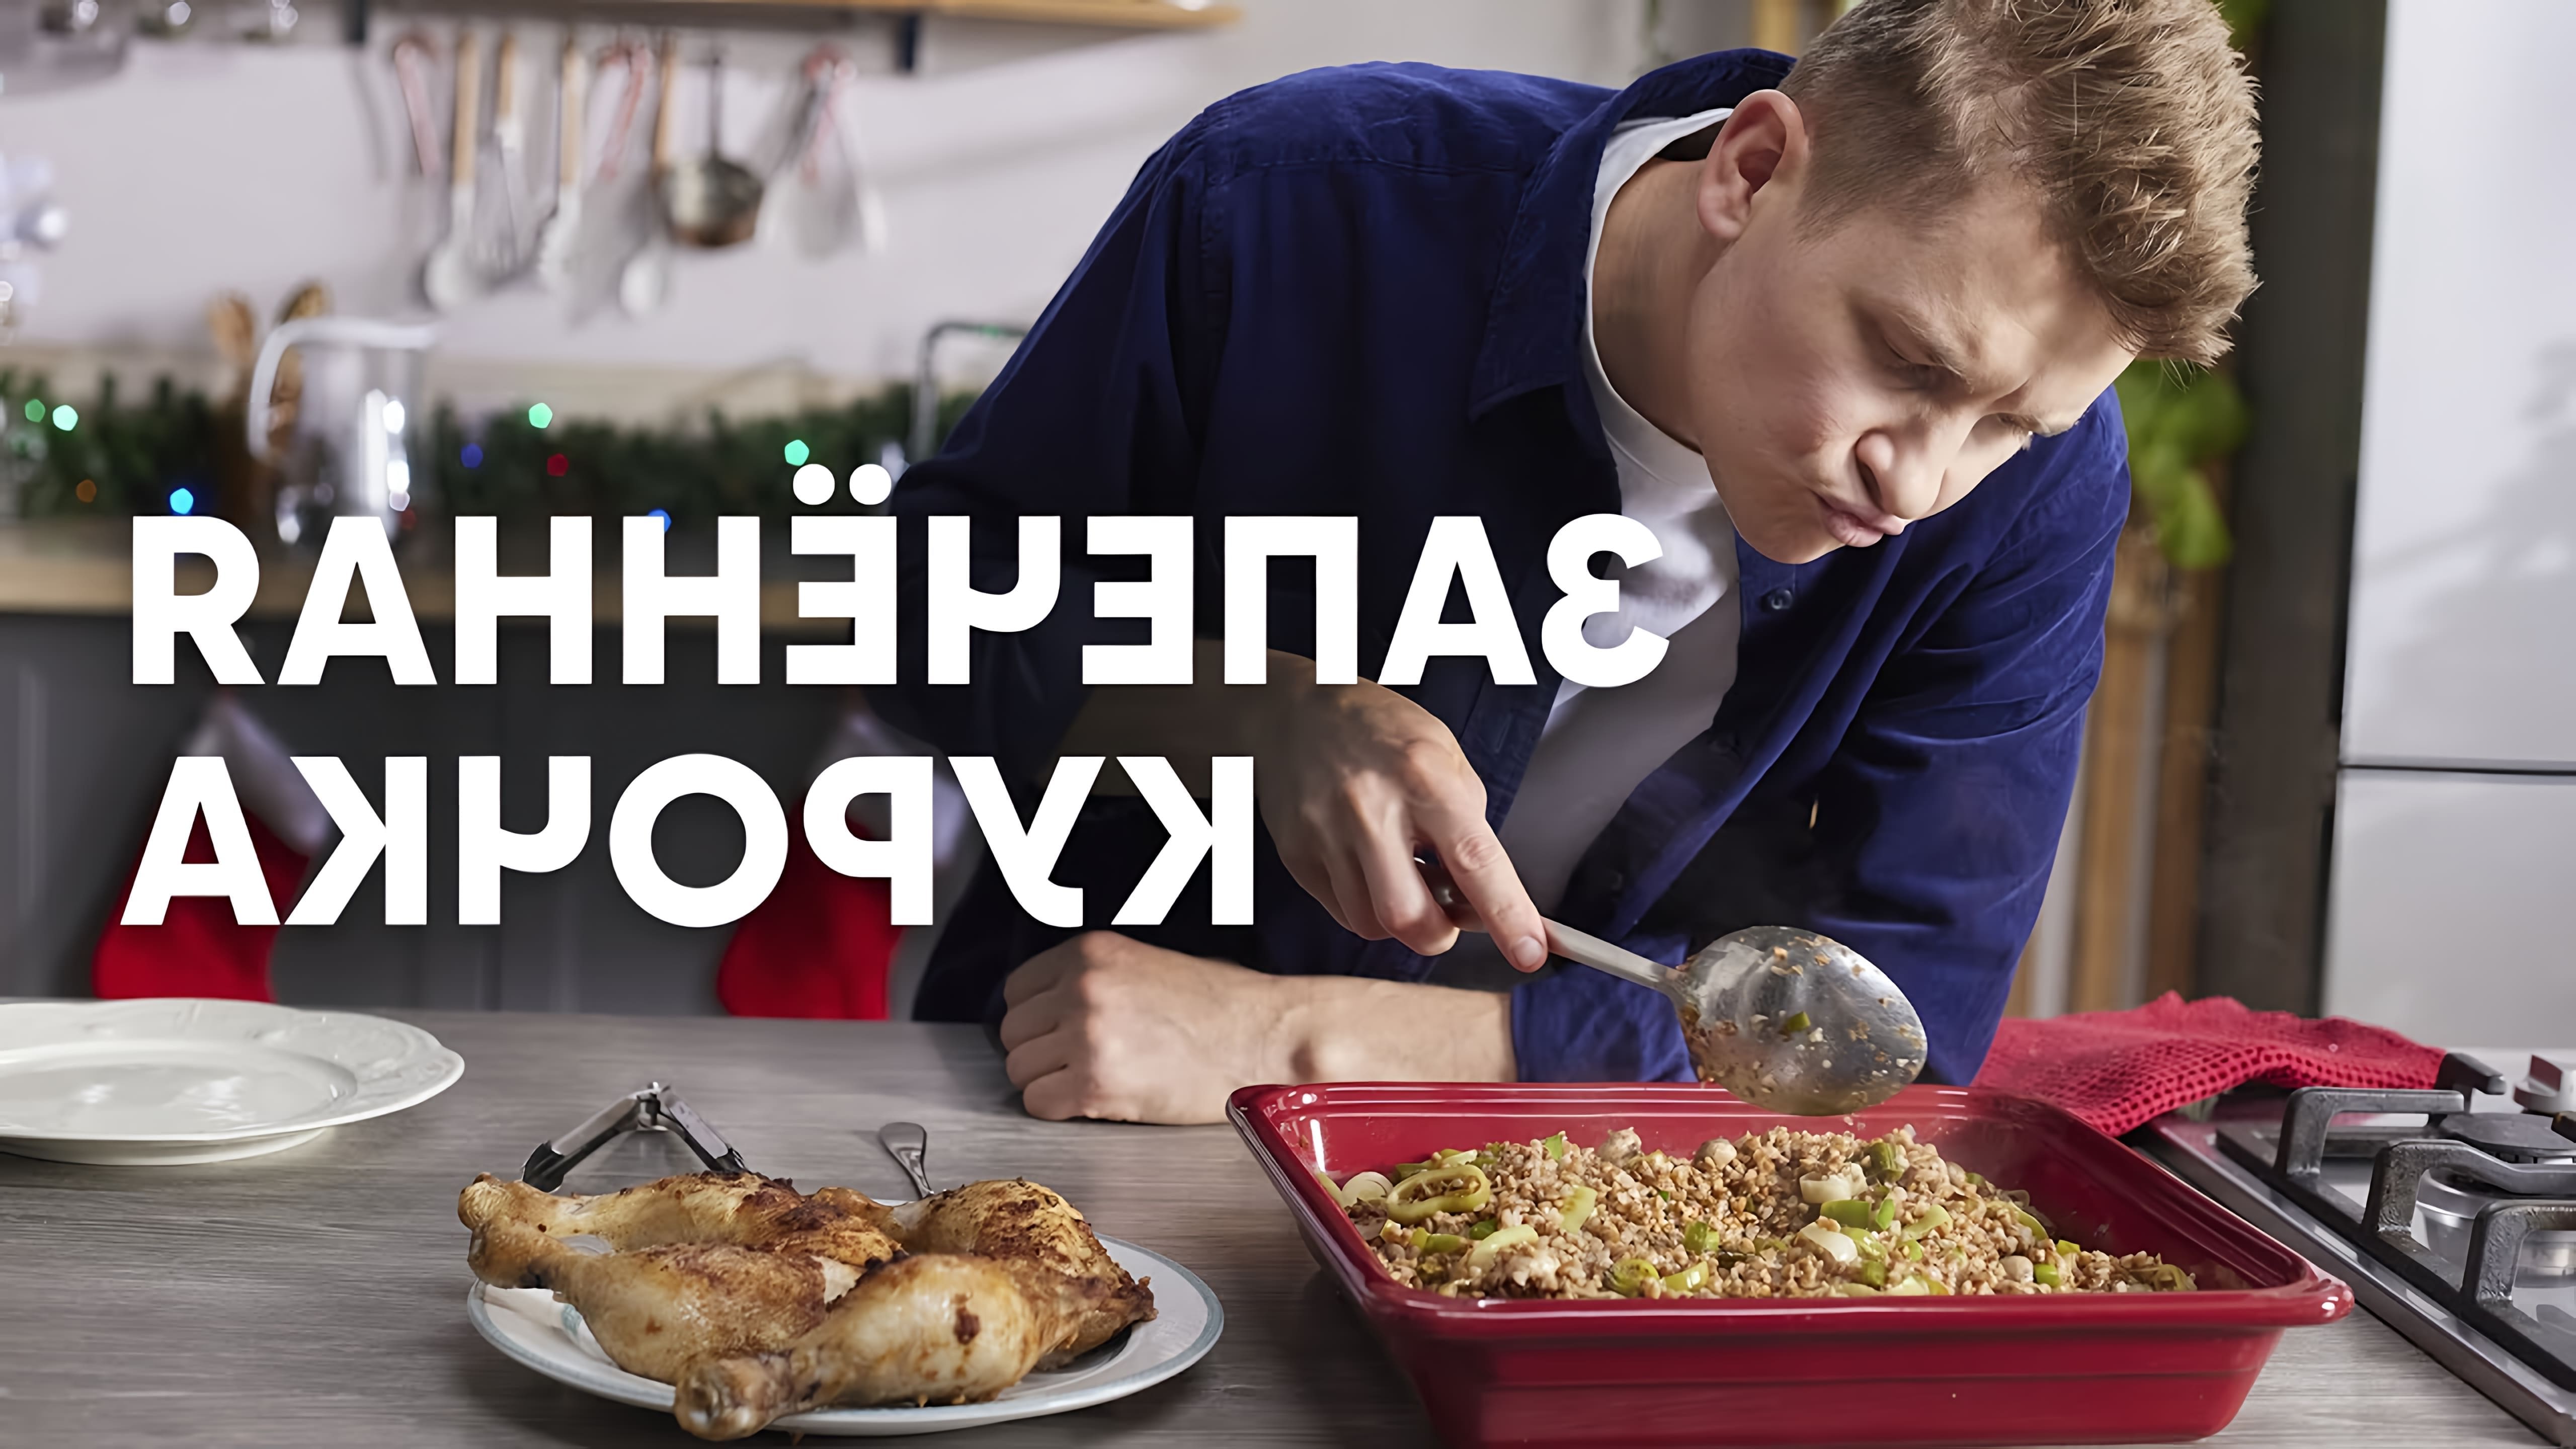 В этом видео шеф-повар Белькович показывает, как приготовить запеченную курицу с гречкой и грибами